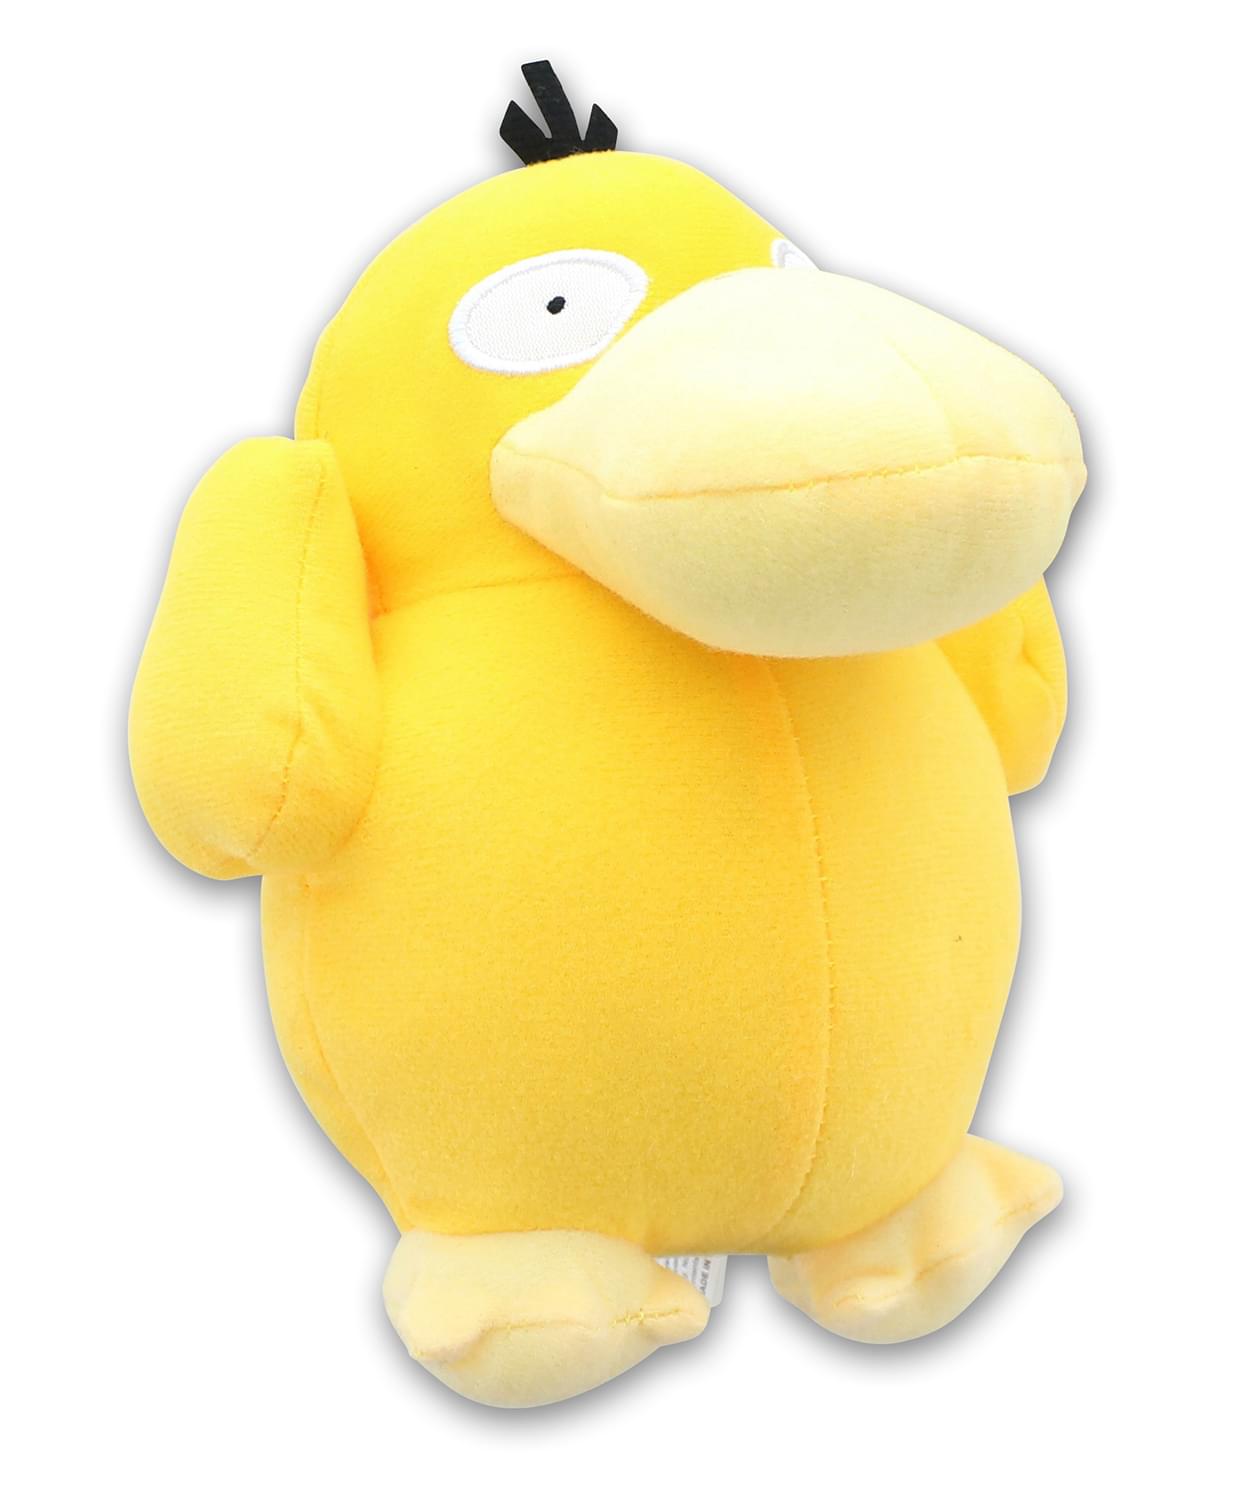 Pokemon 8 Inch Stuffed Character Plush | Psyduck